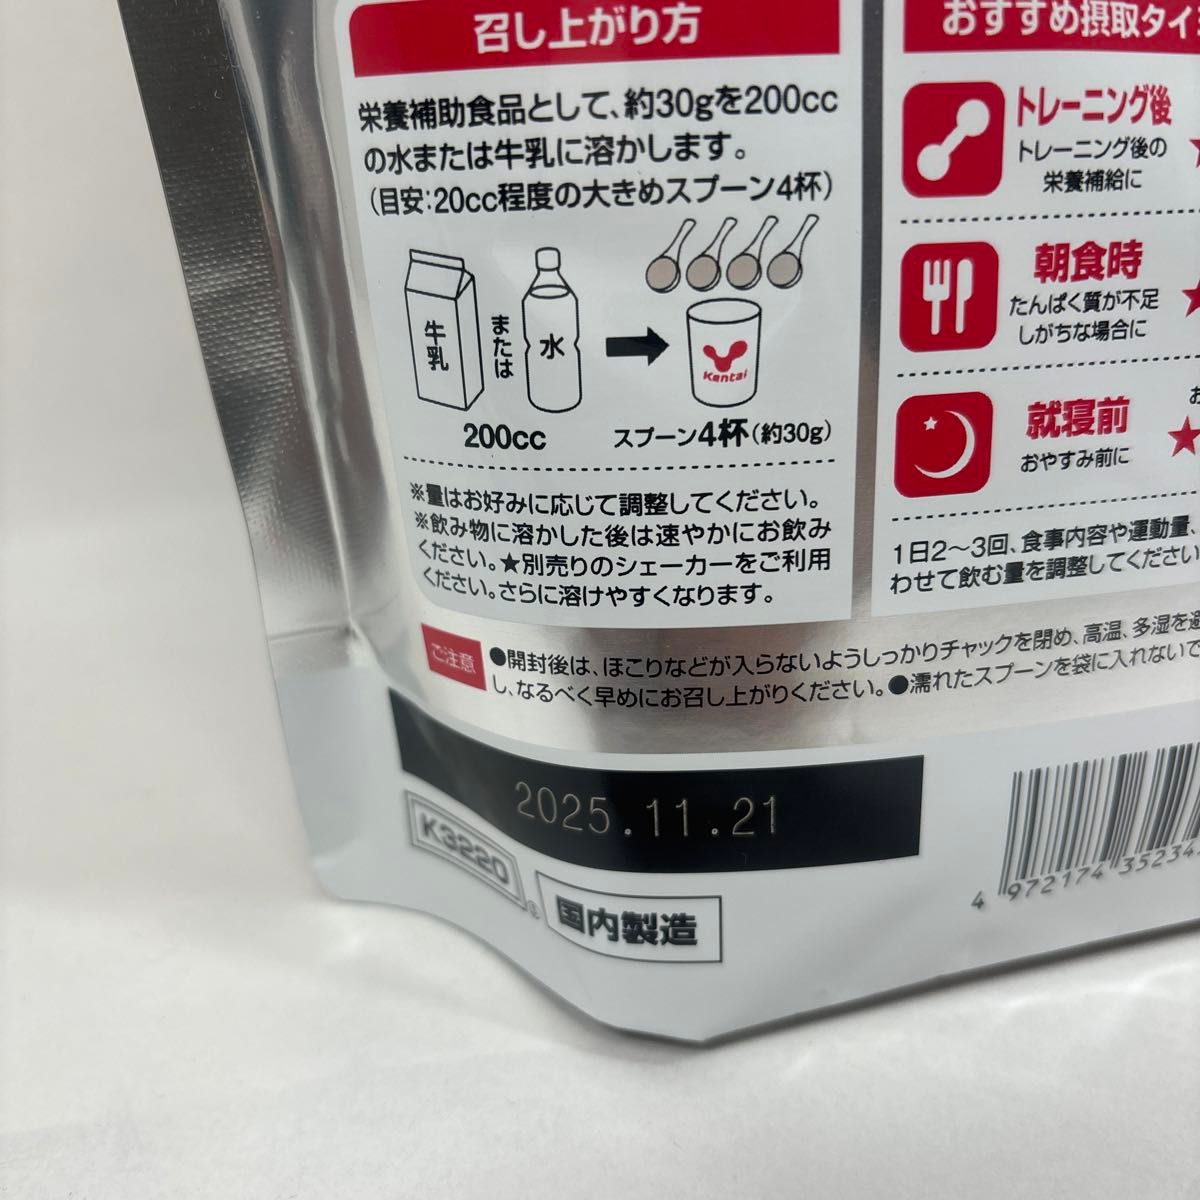 【新品未使用】Kentai(ケンタイ) ウェイトゲインアドバンス ミルクチョコ風味(1kg)